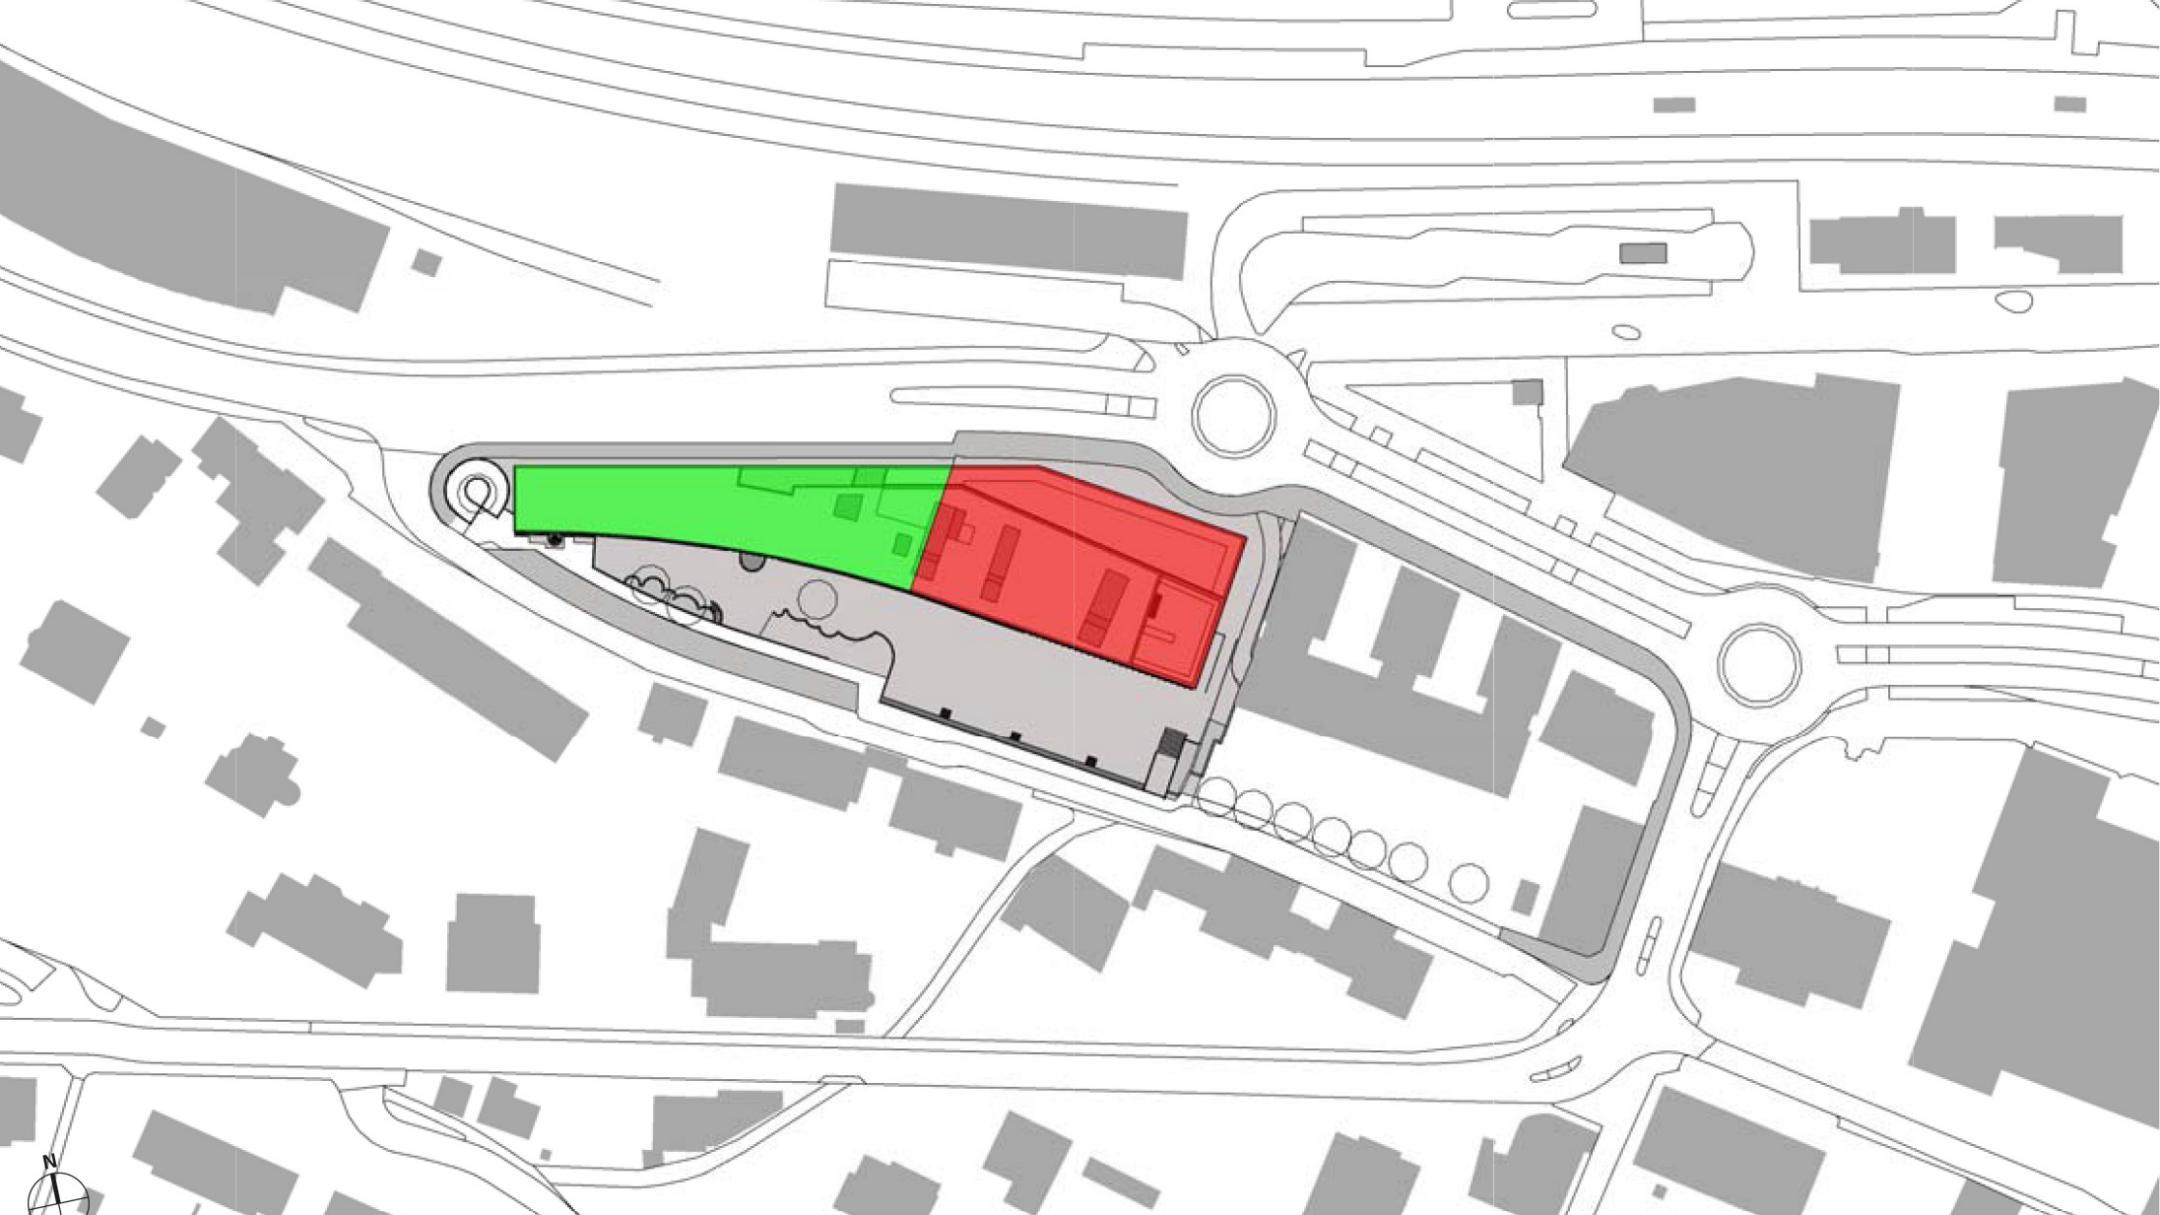 Situationsplan des Gebäudes und näherer Umgebung. Die Erweiterung ist rot und die Sanierung Grün eingezeichnet.